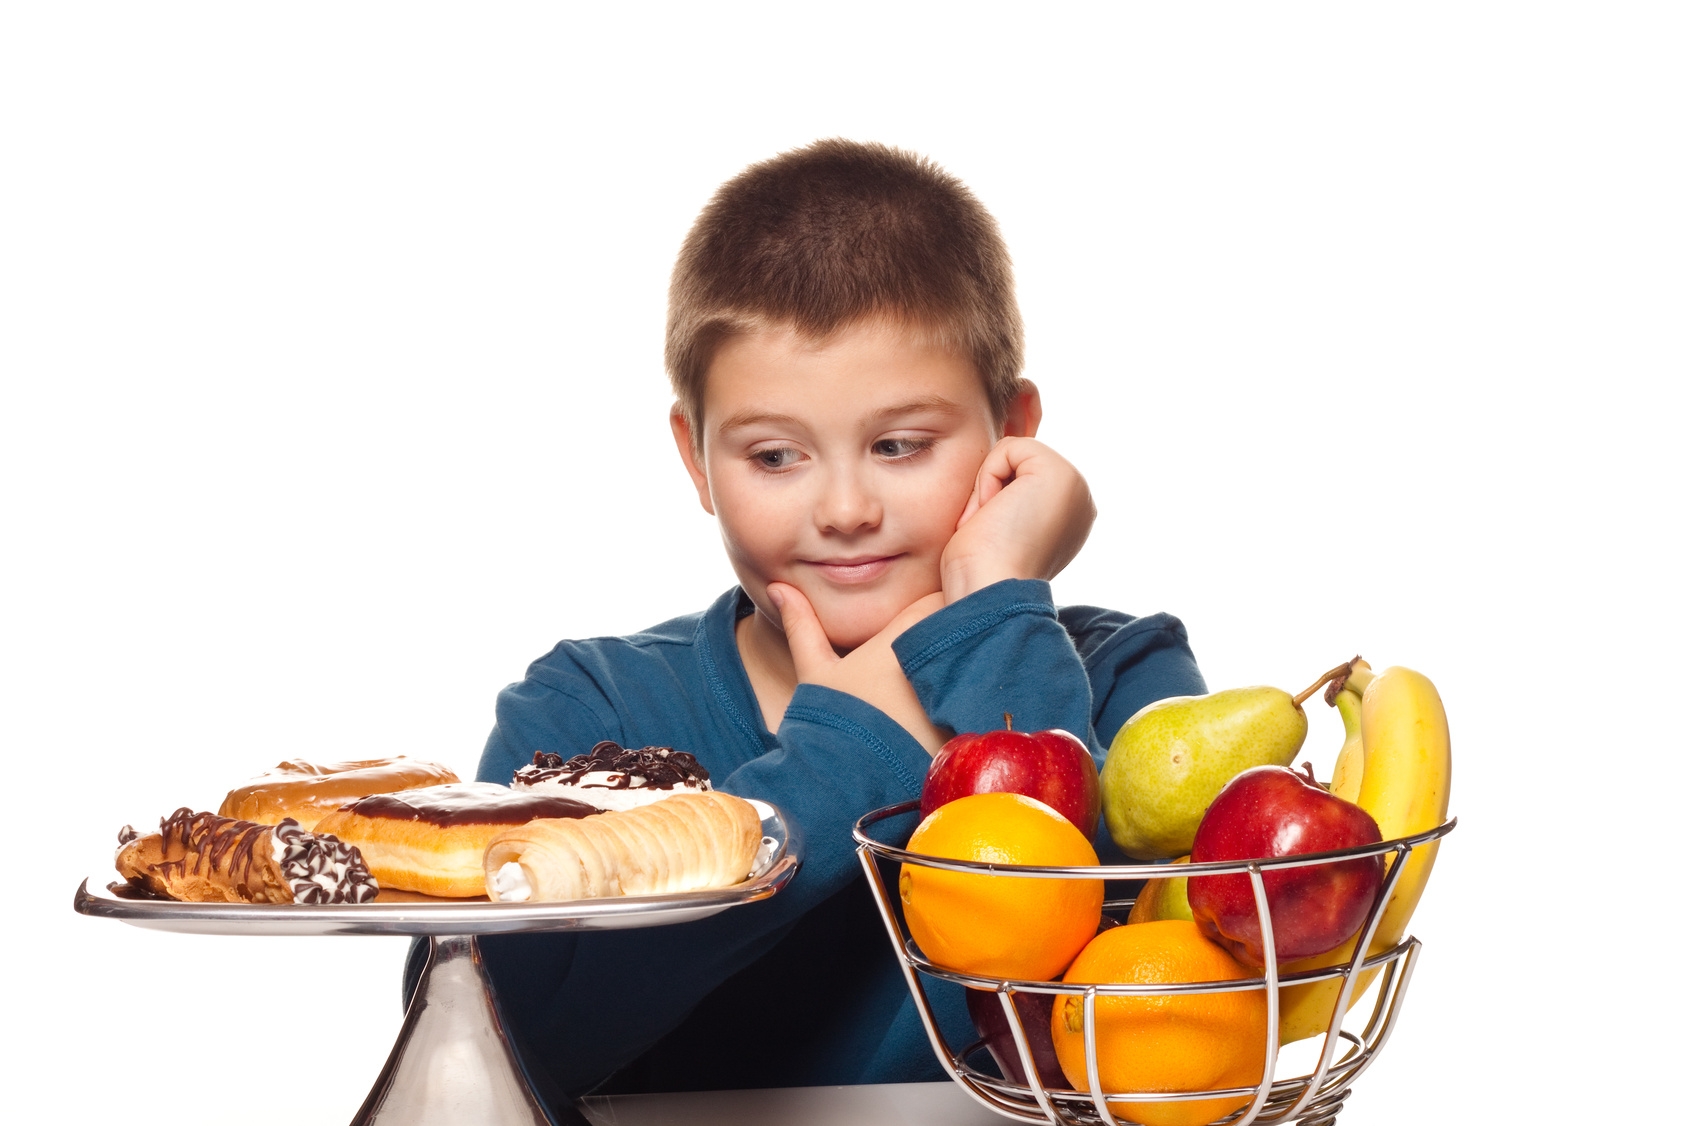 Правильное Питание Для Ребенка 10